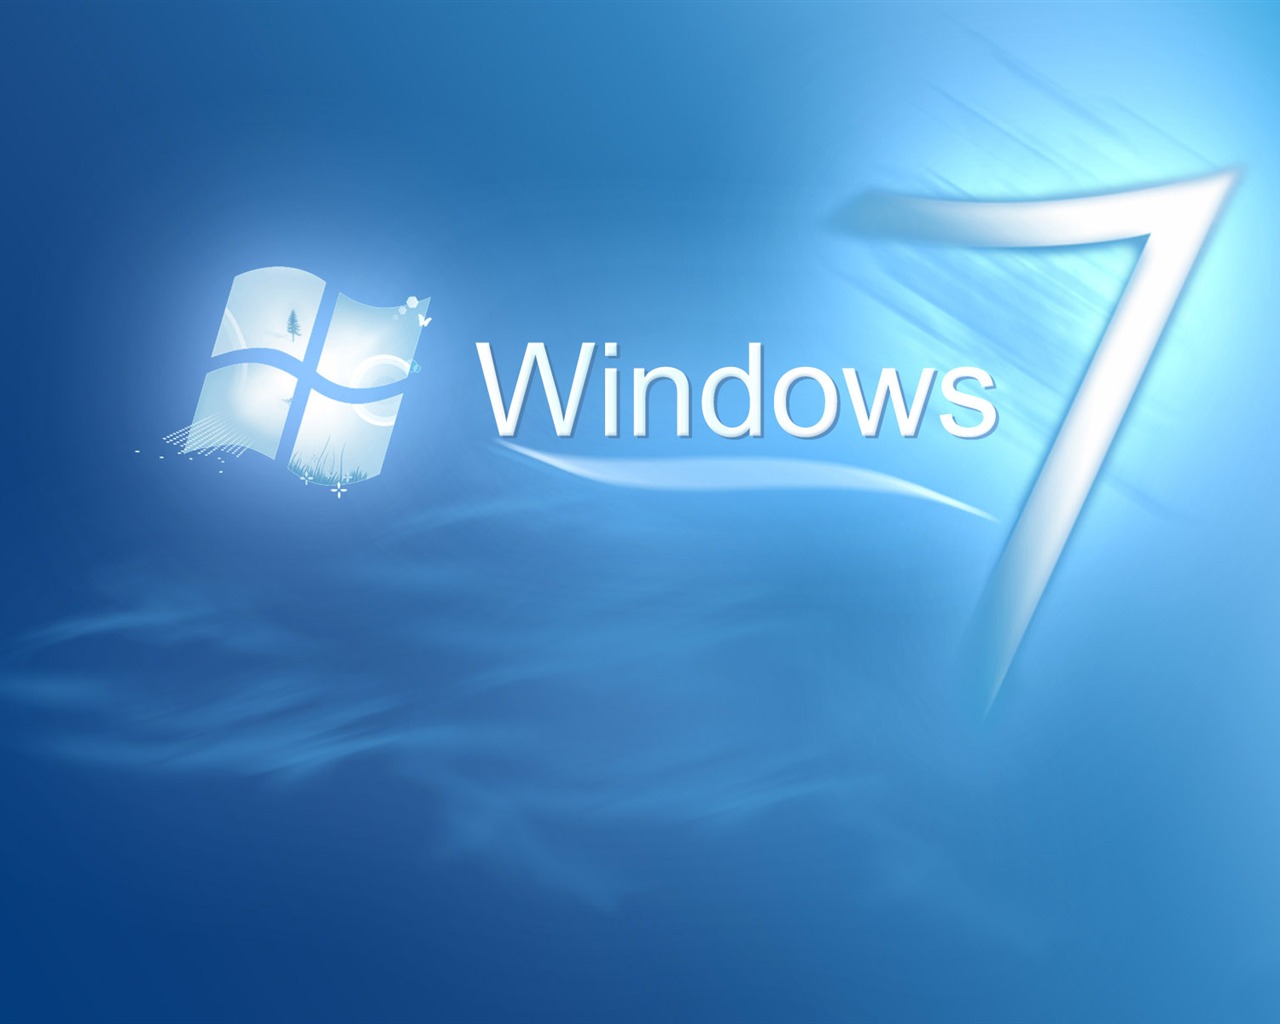 Windows7 theme wallpaper (2) #10 - 1280x1024